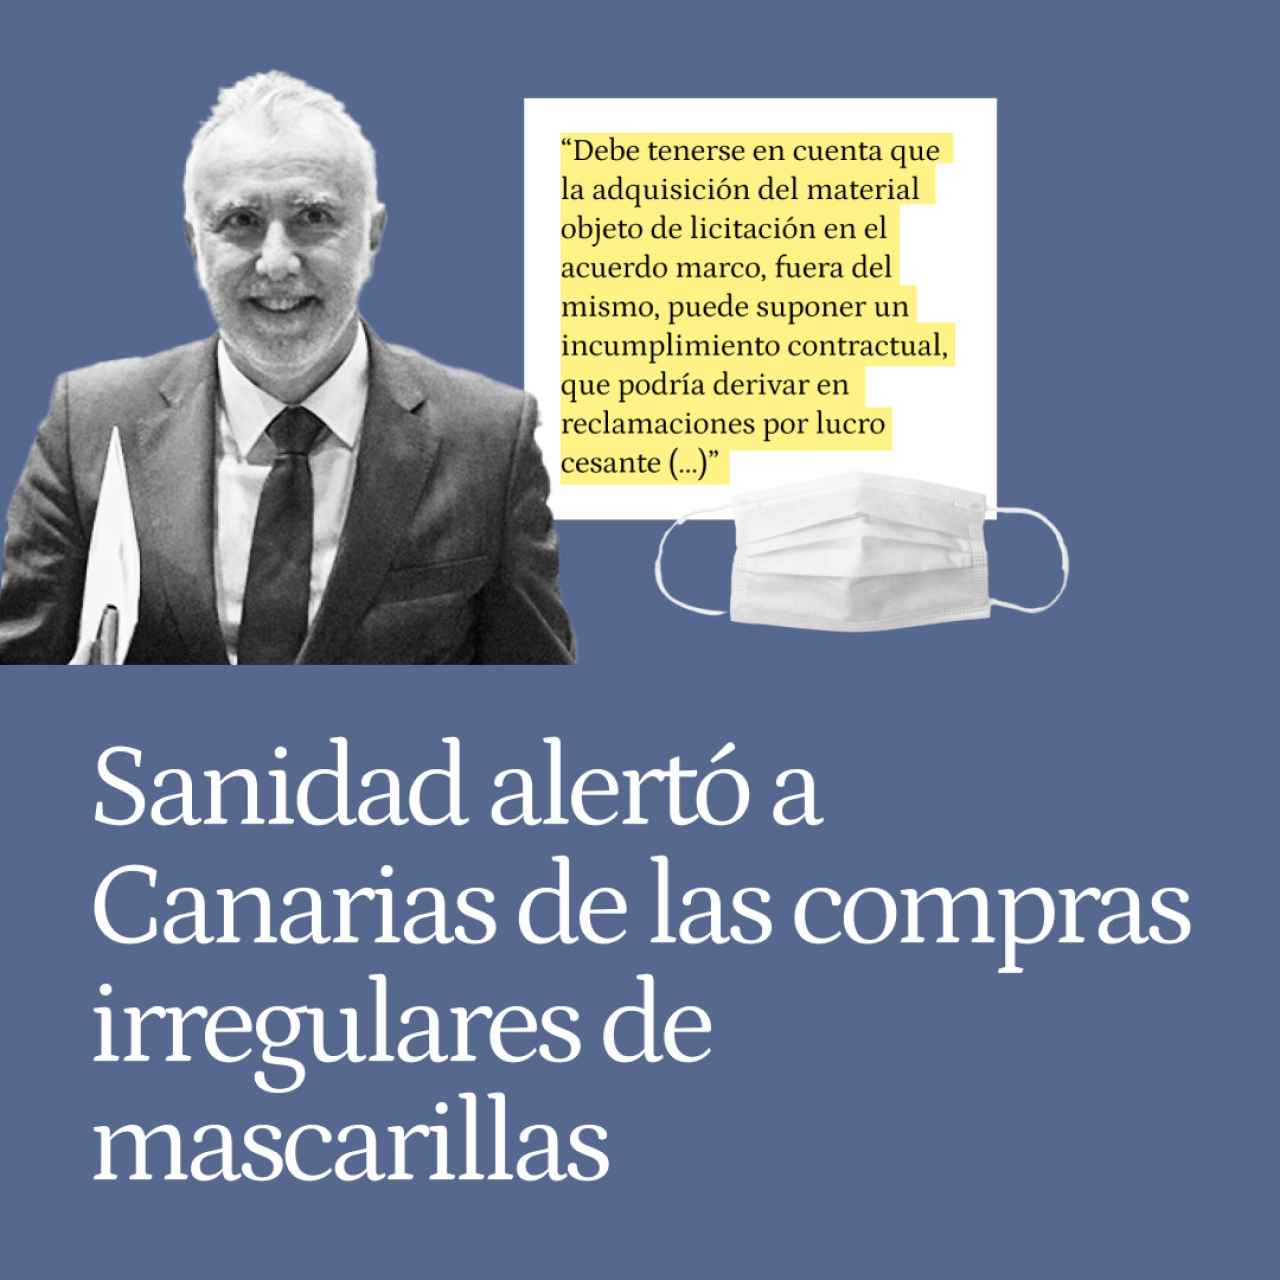 Sanidad alertó a Canarias de las compras irregulares de mascarillas a empresas externas al Acuerdo Marco